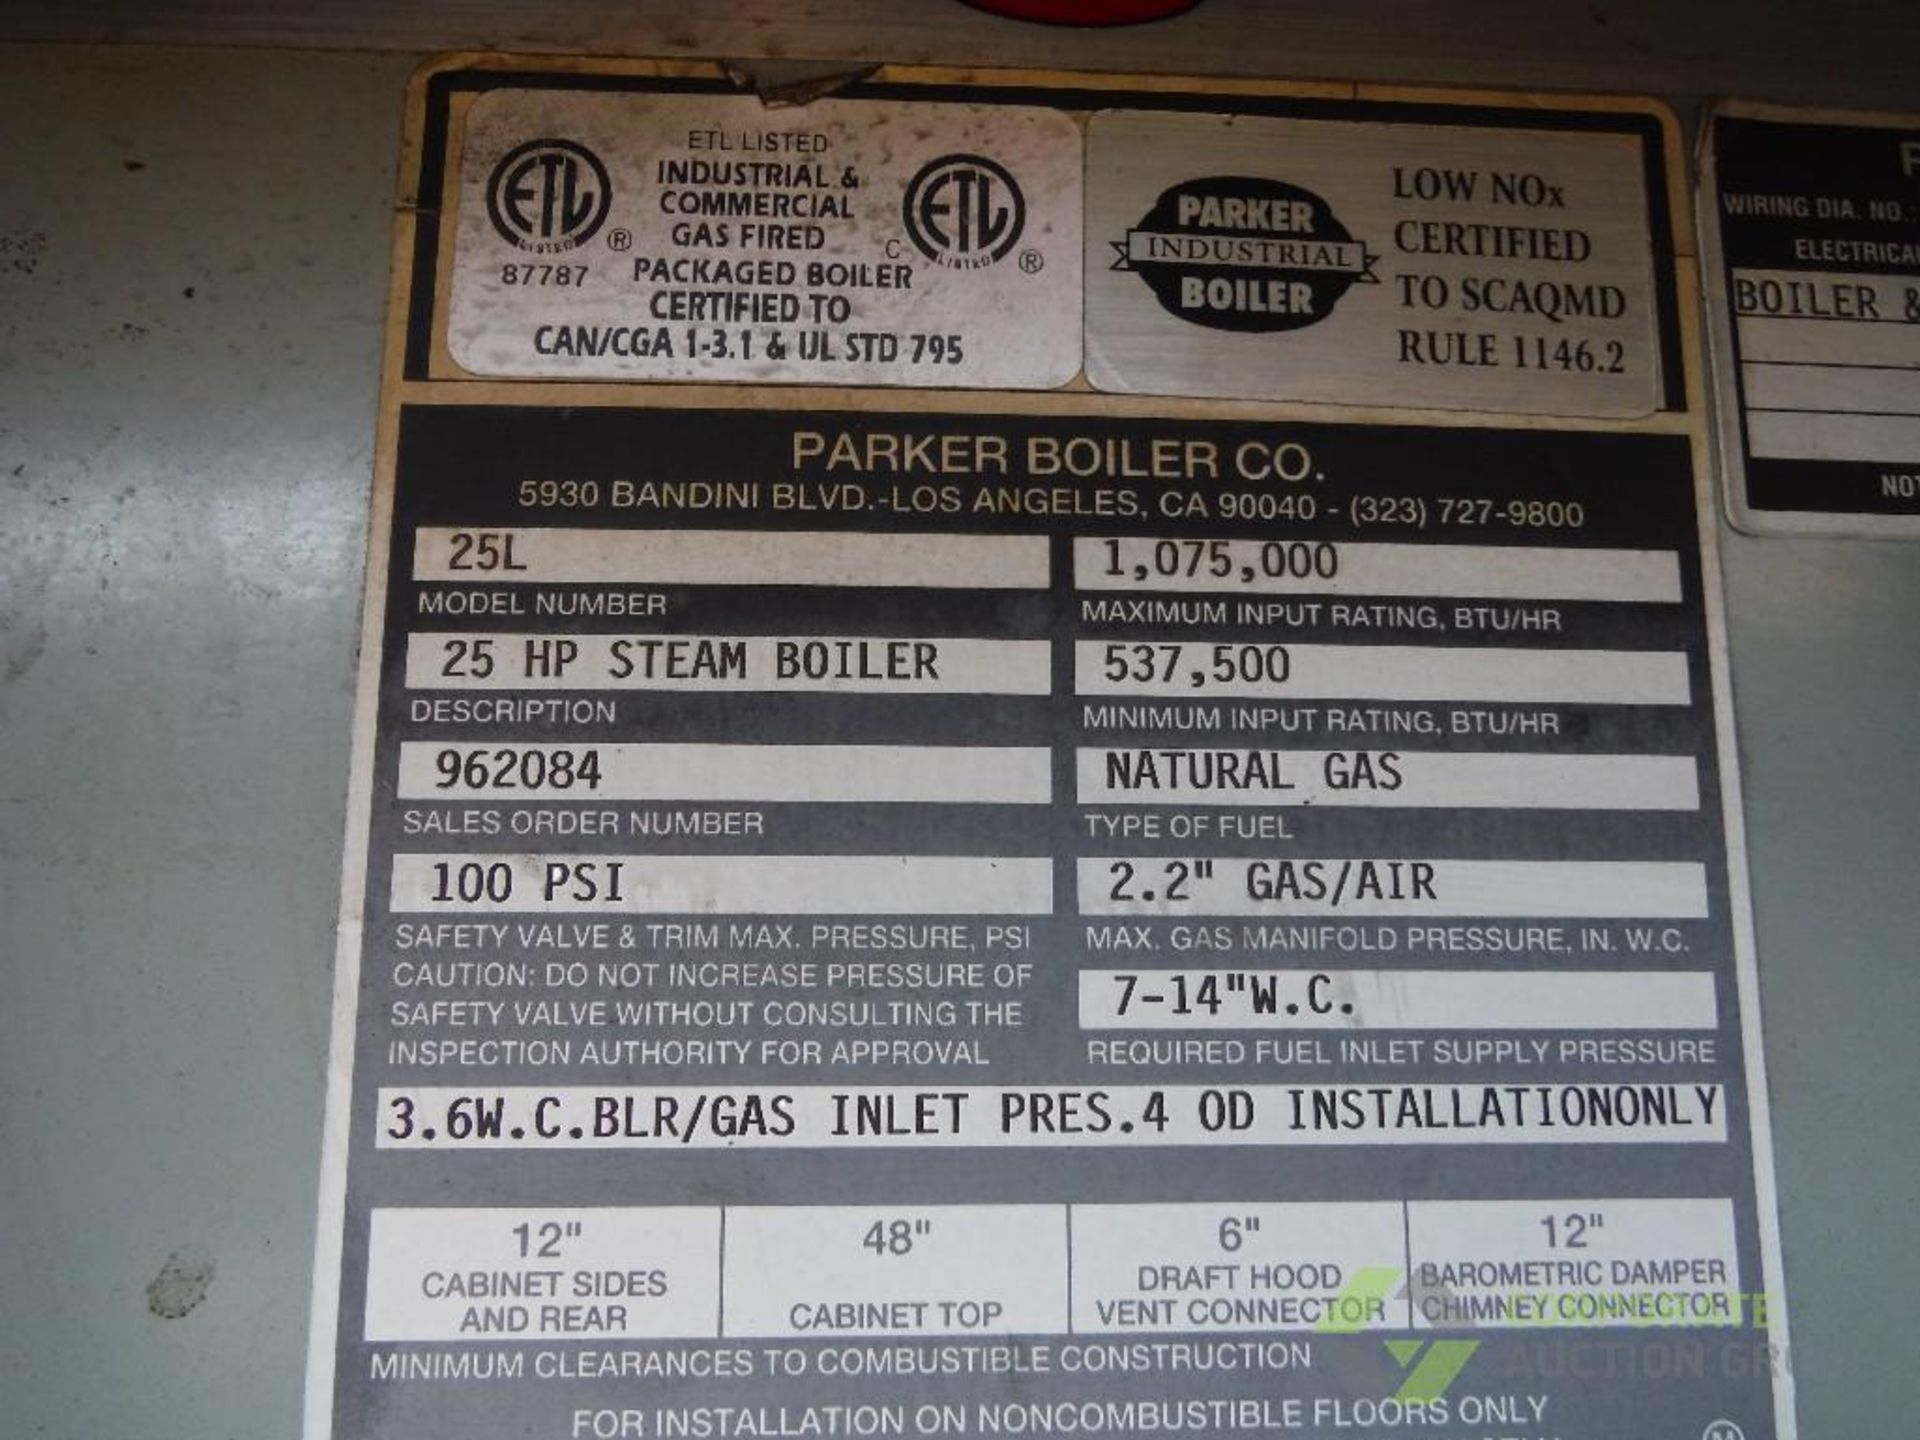 2000 Parker 25 hp steam boiler, Model 25L, SN 51908 natural gas, 1,075,000 max btu/hr., 863 lb./ - Image 3 of 8